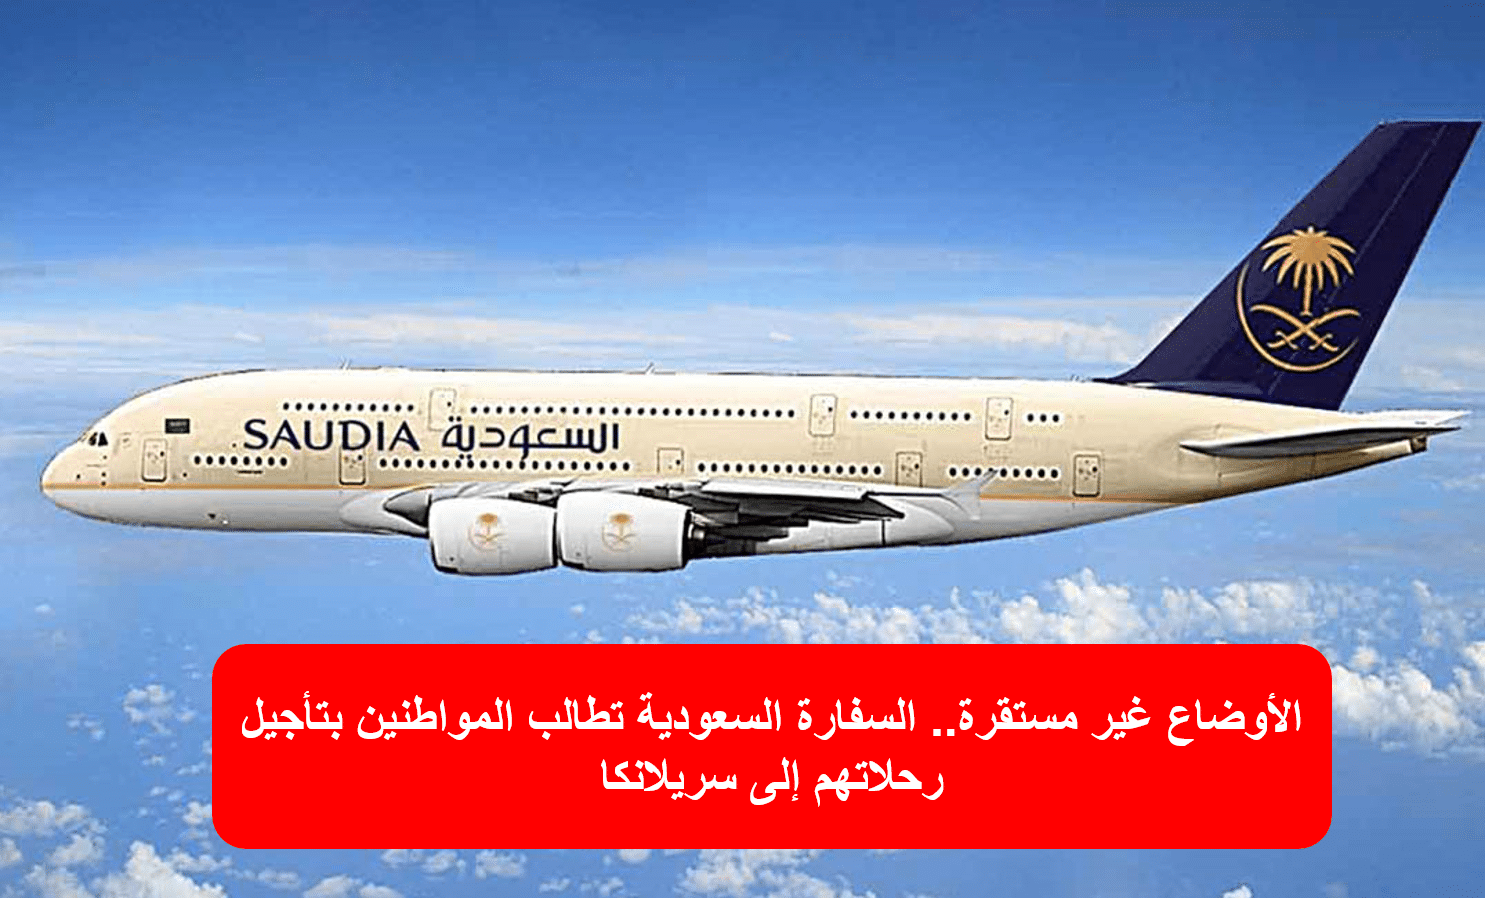 السعودية تحذر مواطنيها من السفر إلى سريلانكا وتدعوهم لتأجيل الرحلات